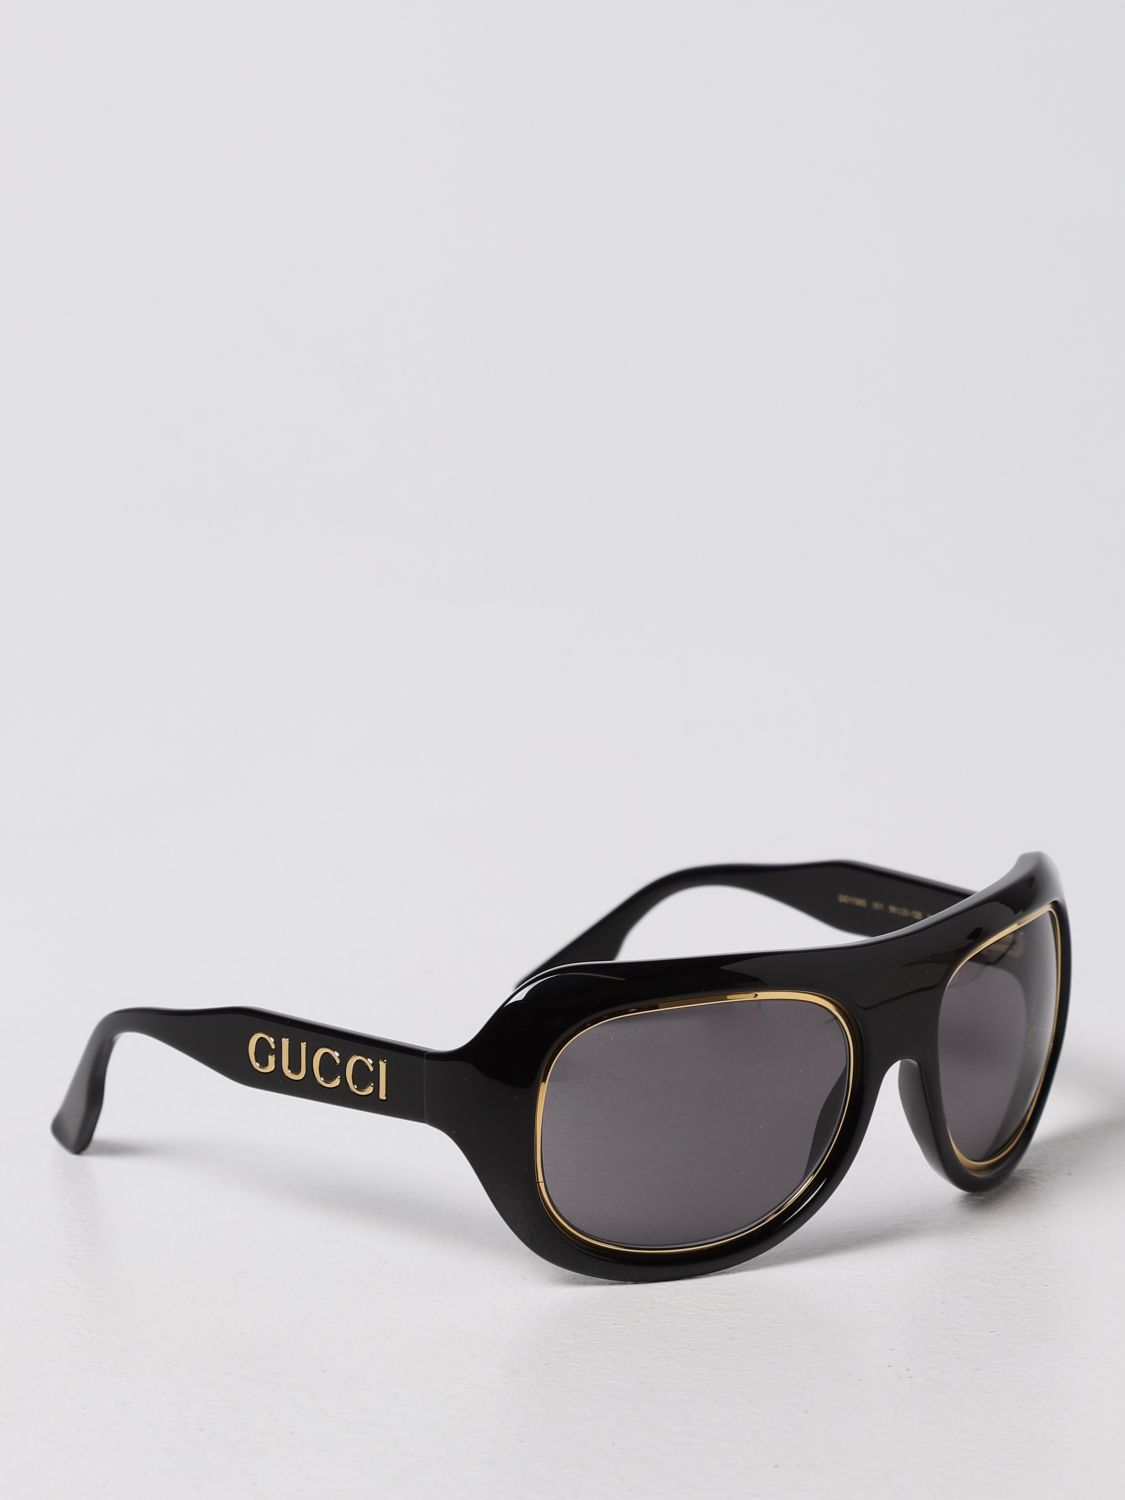 Brille Gucci: Brille damen Gucci schwarz 1